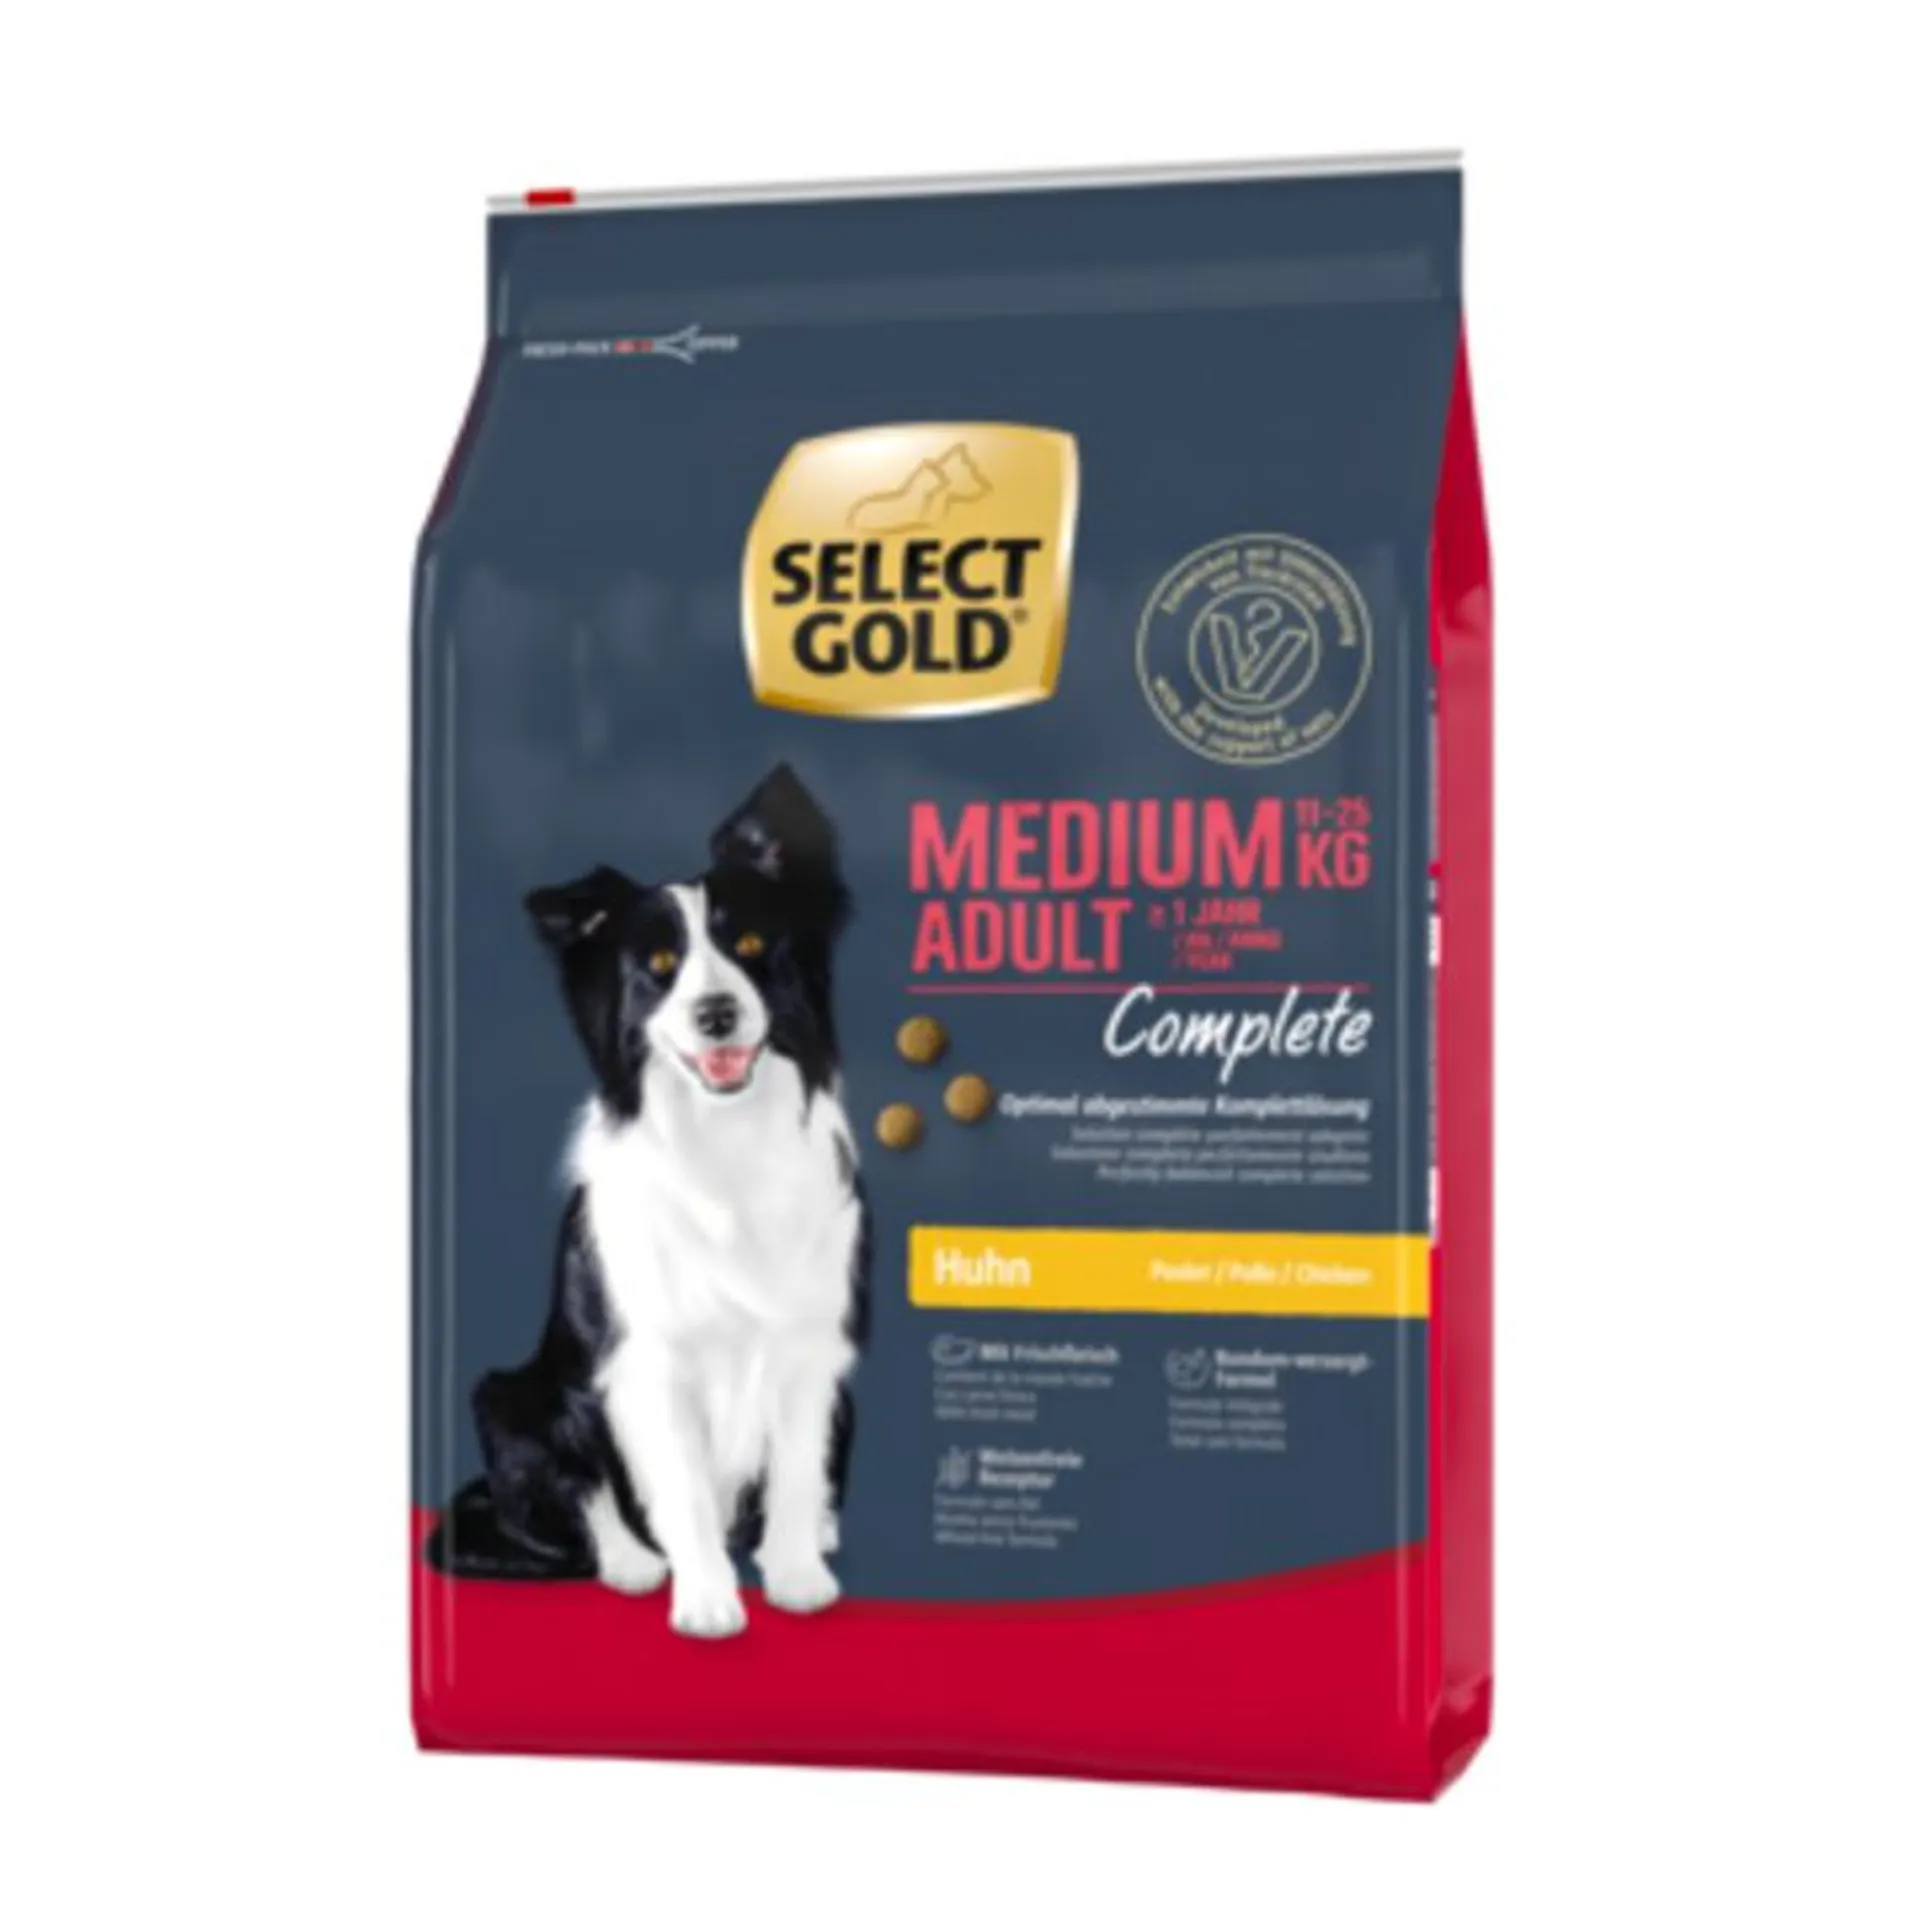 SELECT GOLD Complete Medium Adult Huhn 4 kg